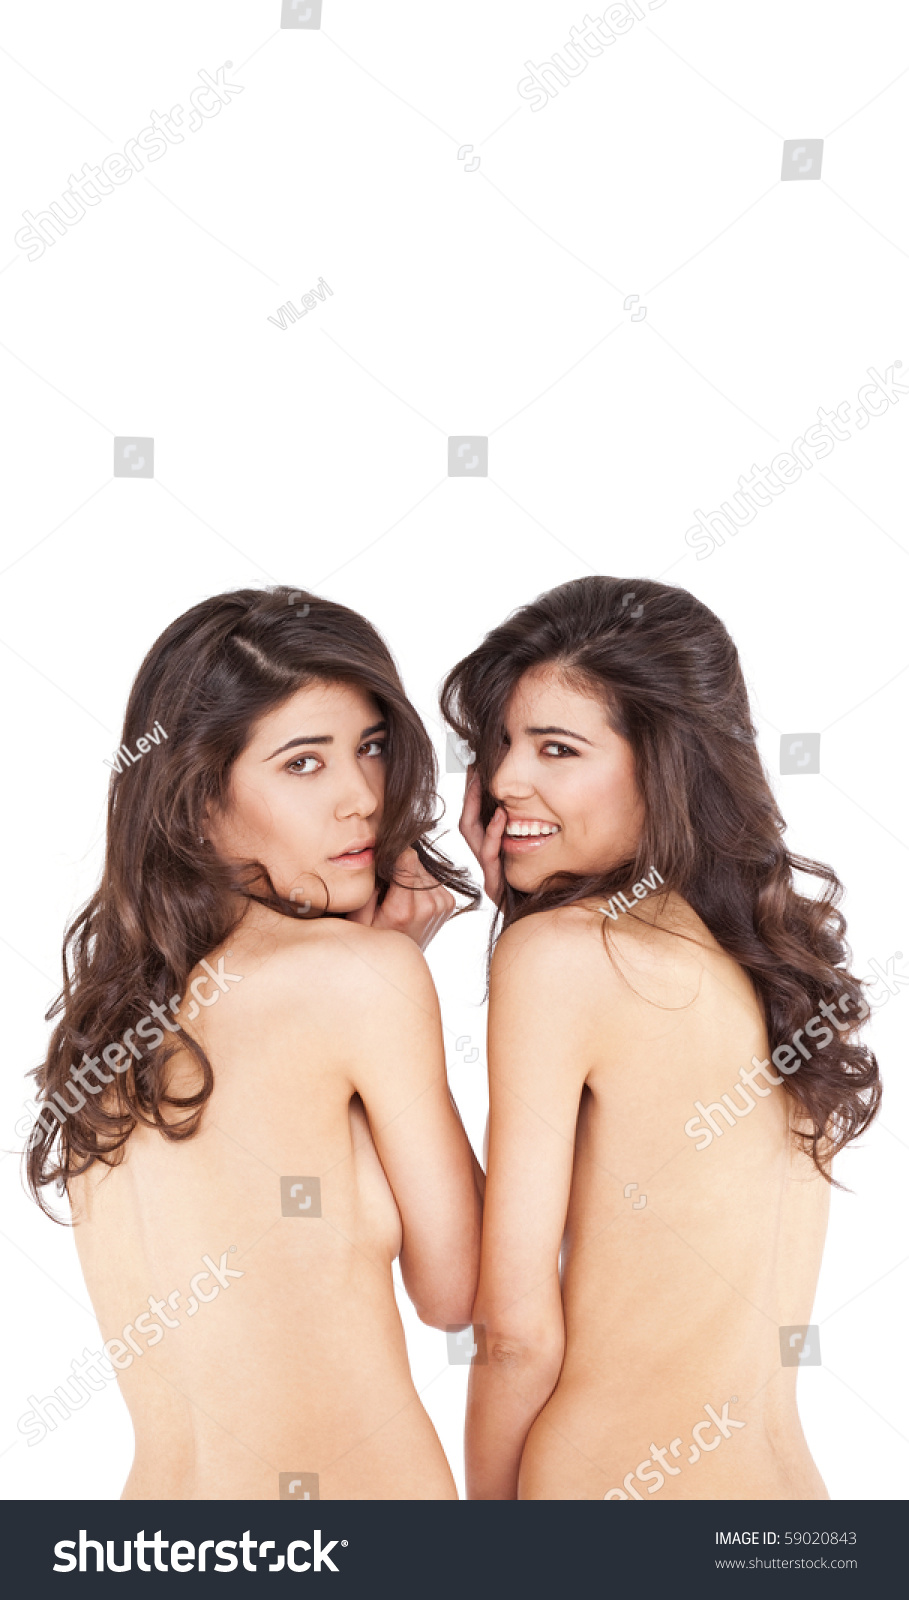 Nude Twin Girls